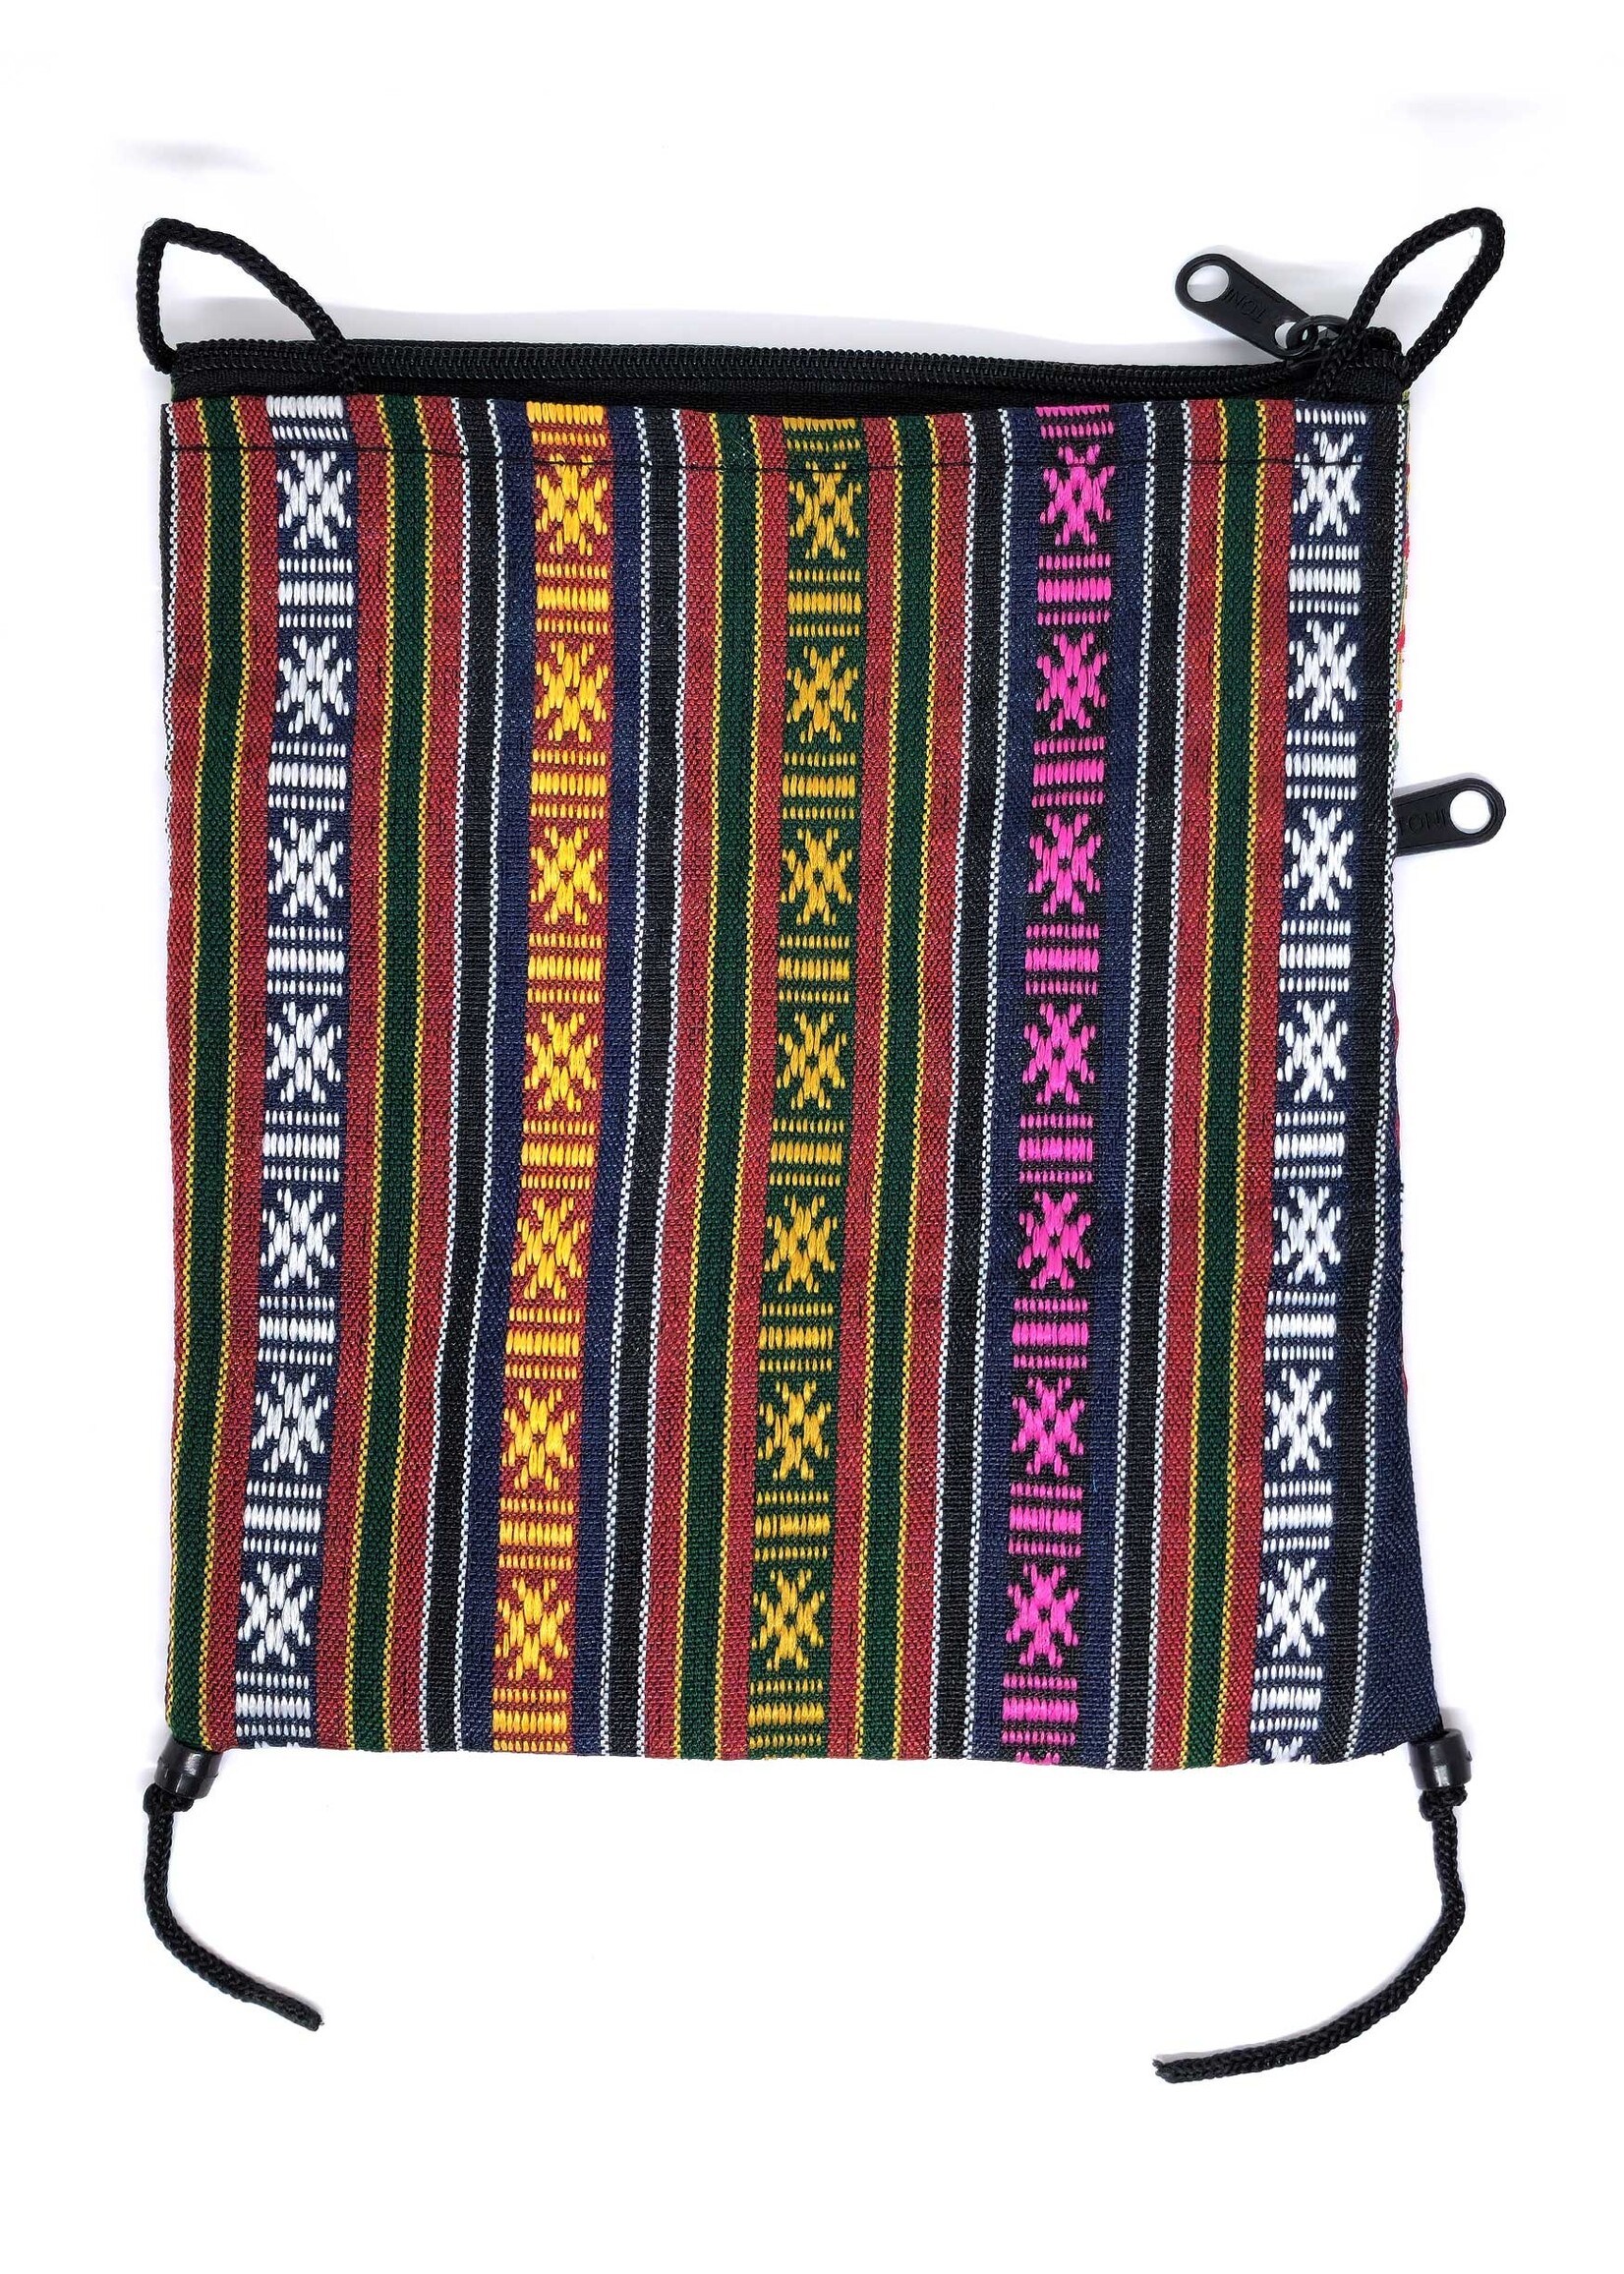 Piccola borsa a tracolla in broccato di seta tibetana con mandala, rosso